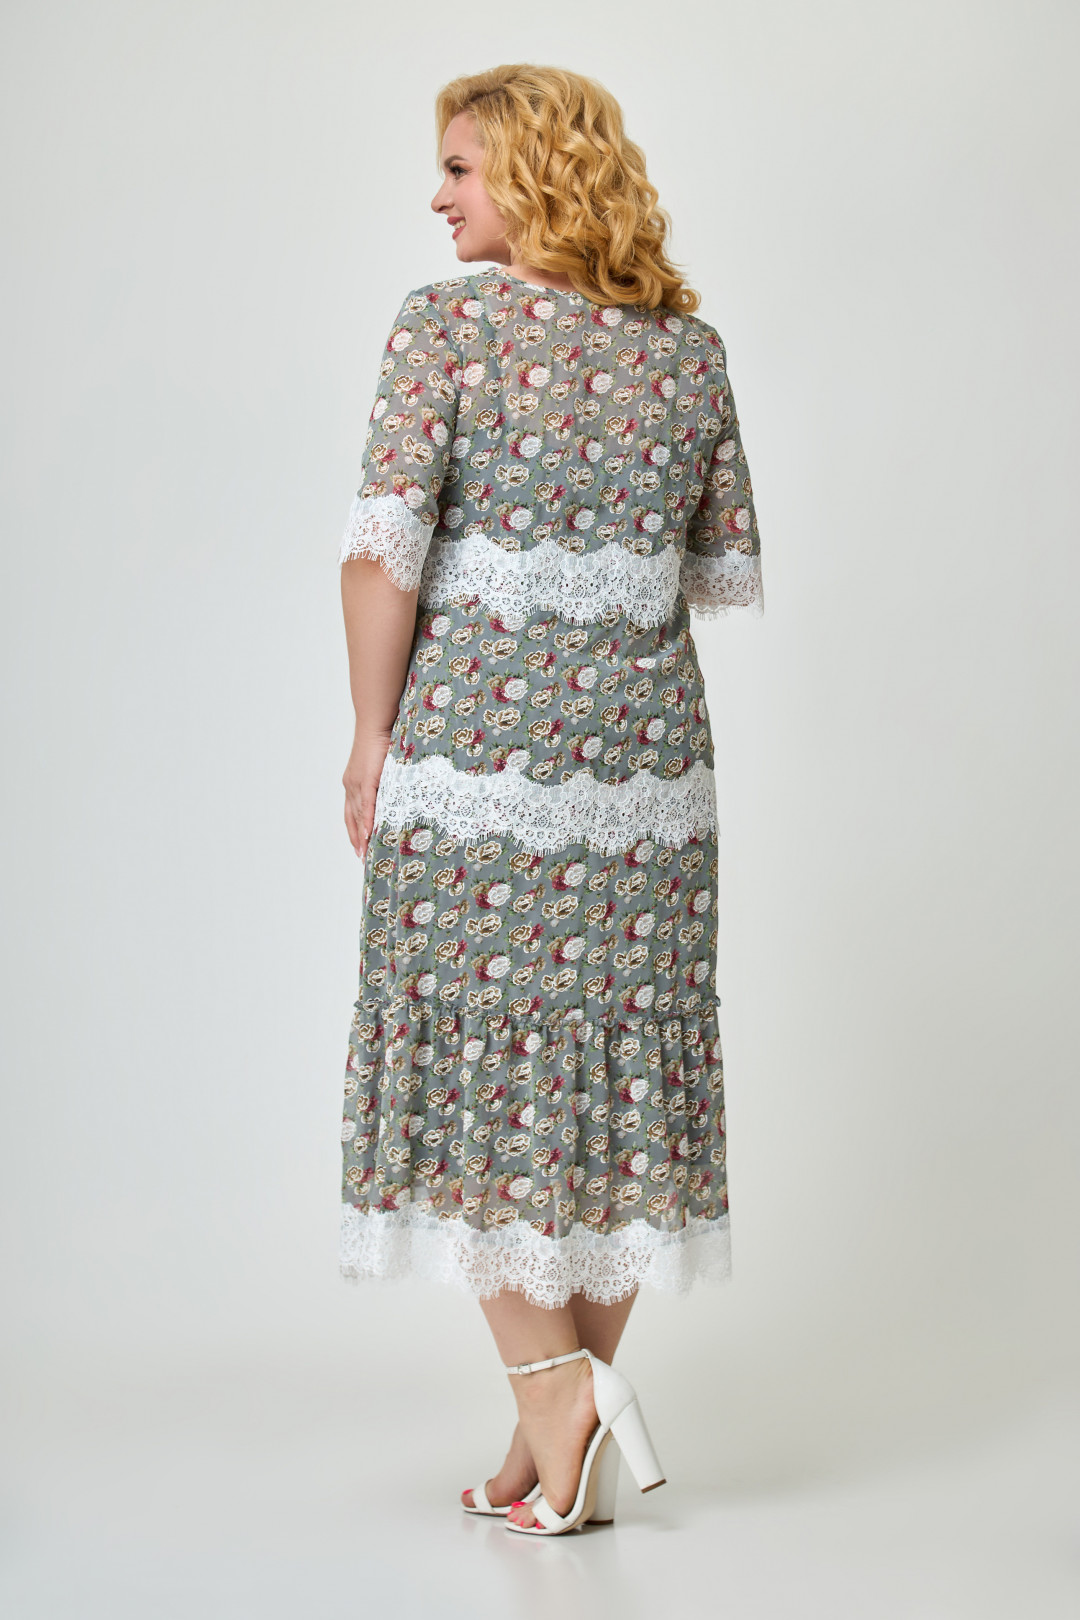 Платье Светлана-Стиль 1644 серый+розы